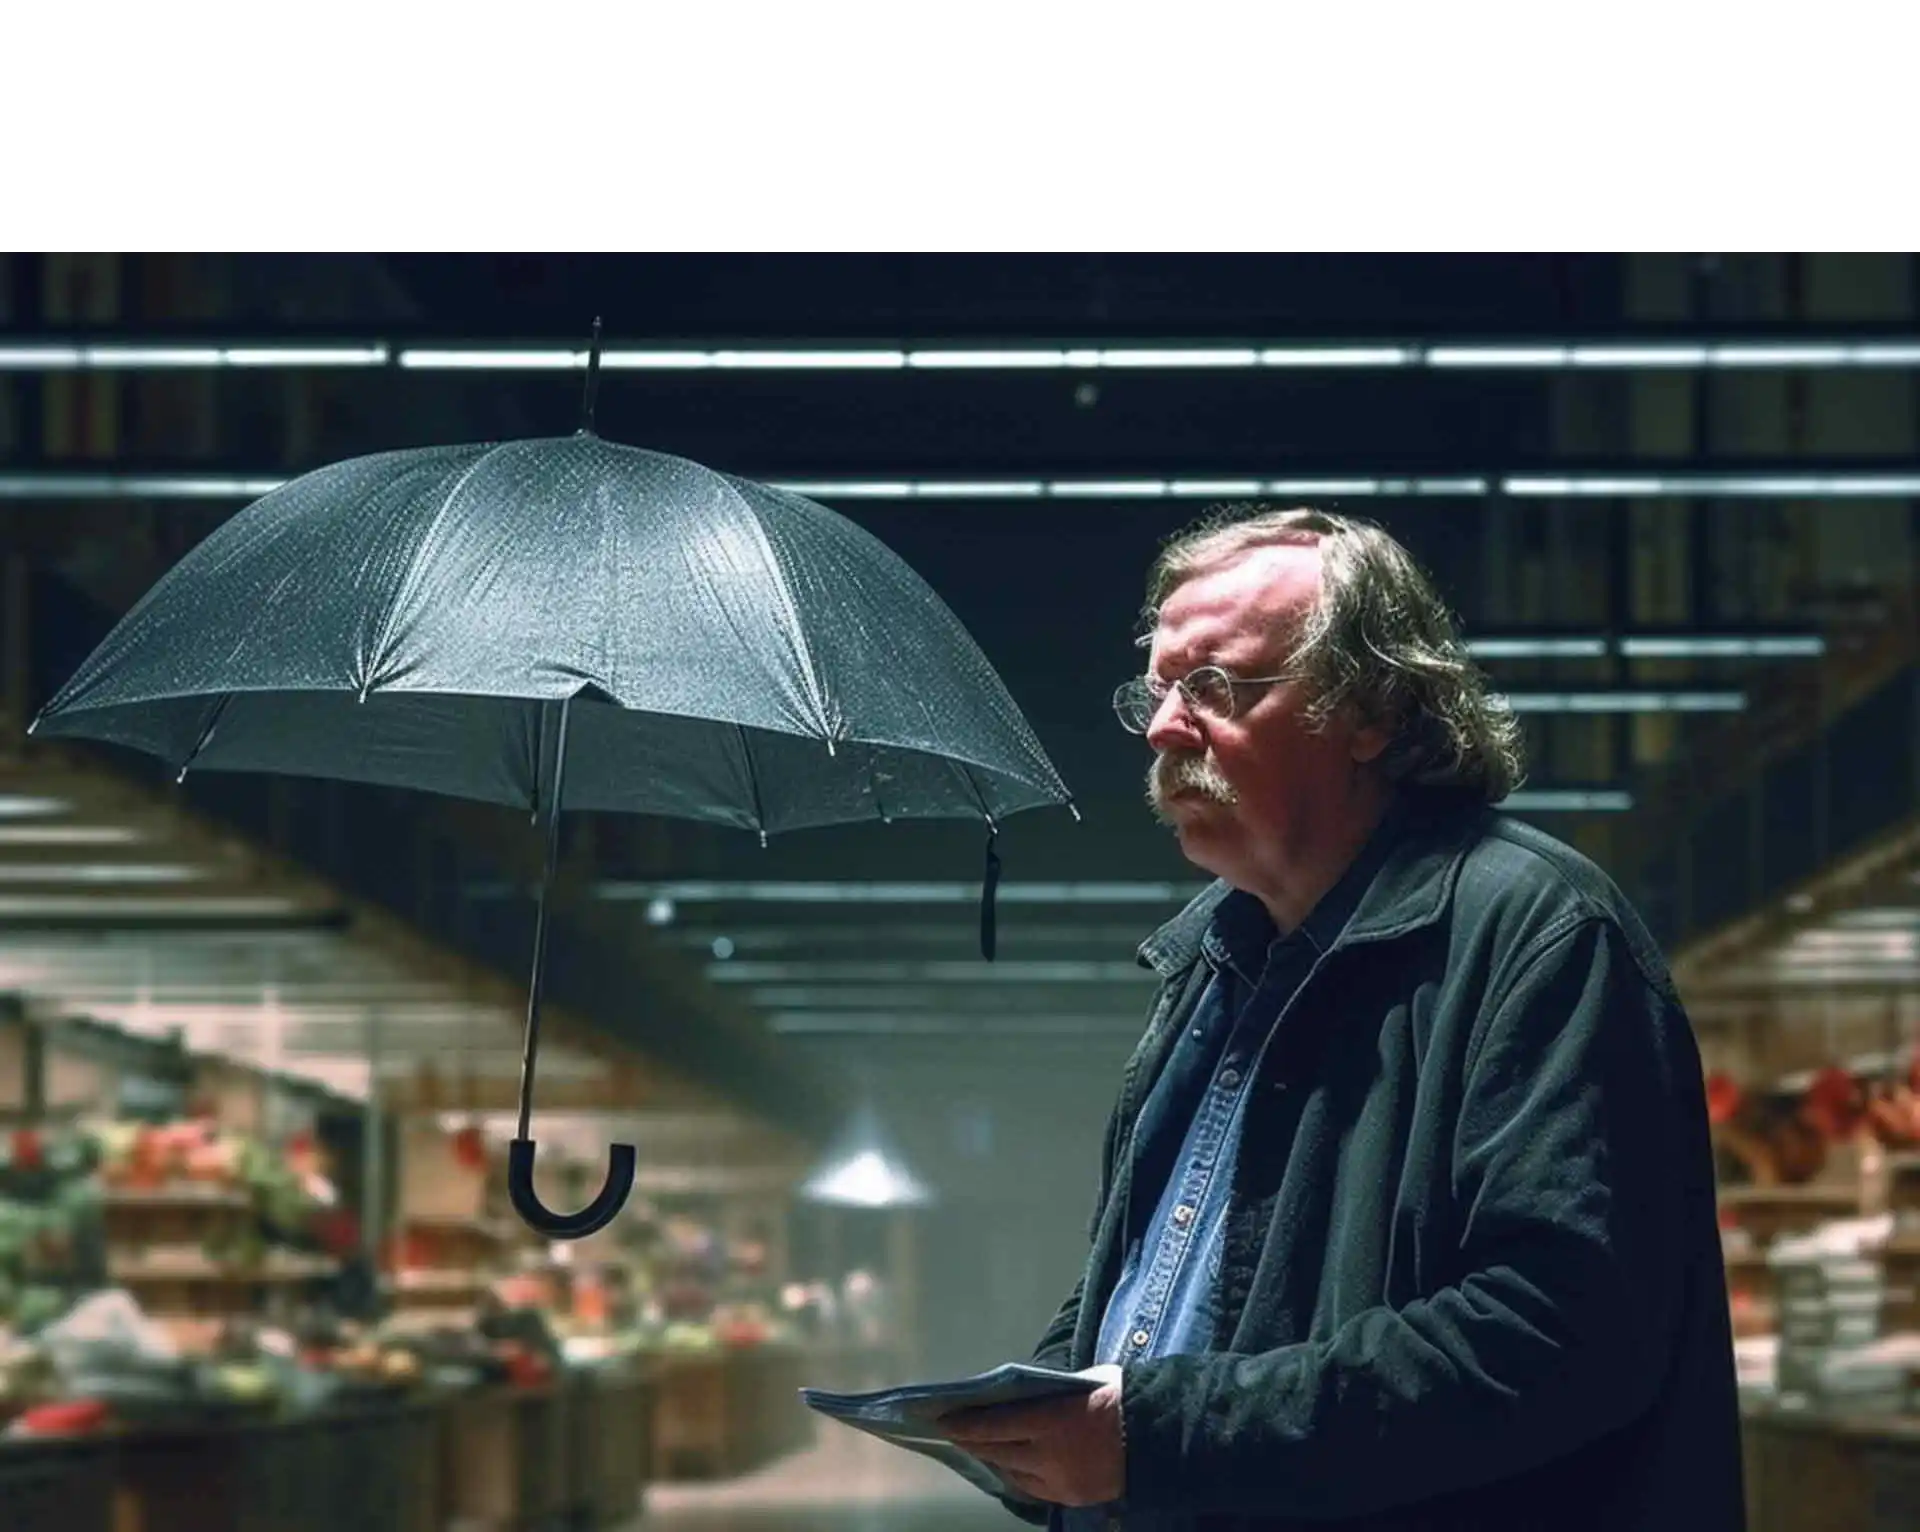 Peter Sloterdijk mit fliegendem Regenschirm und dies ohne Zynismus abgebildet im Stil von Spitzweg und somit als typisch deutscher Philosoph